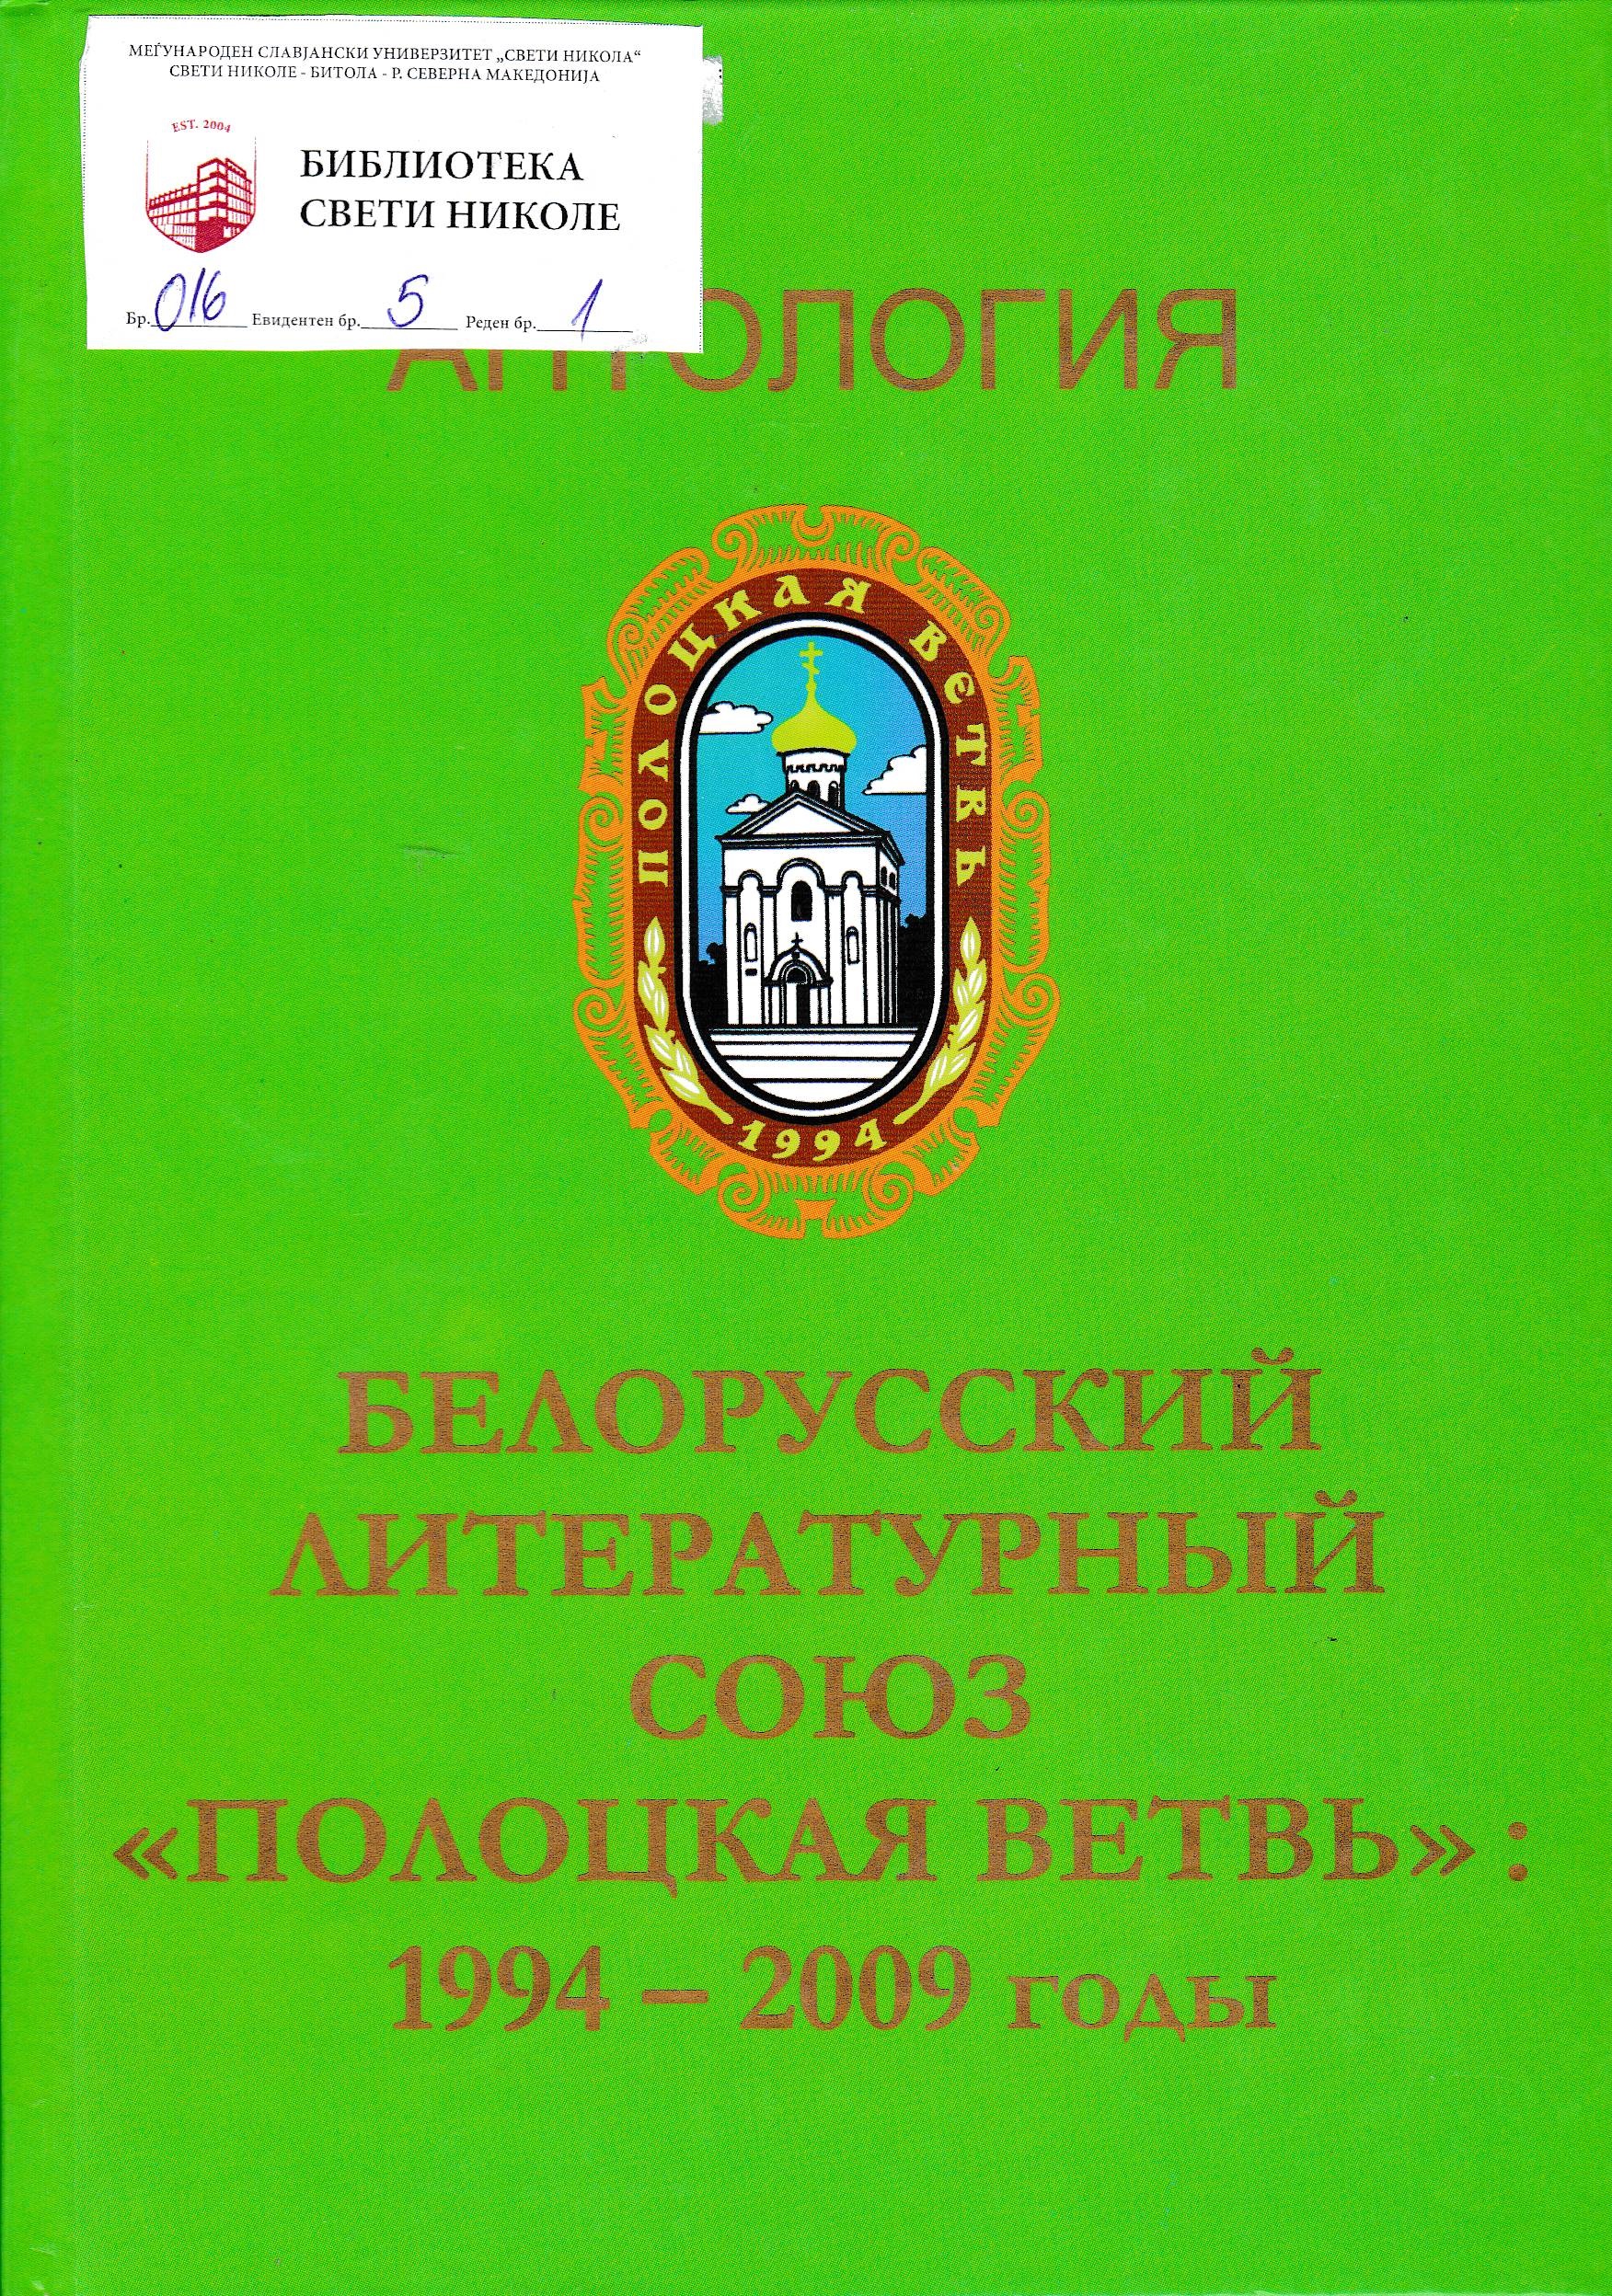 Белорусский литературный союз ( Полоцкая ветвъ)